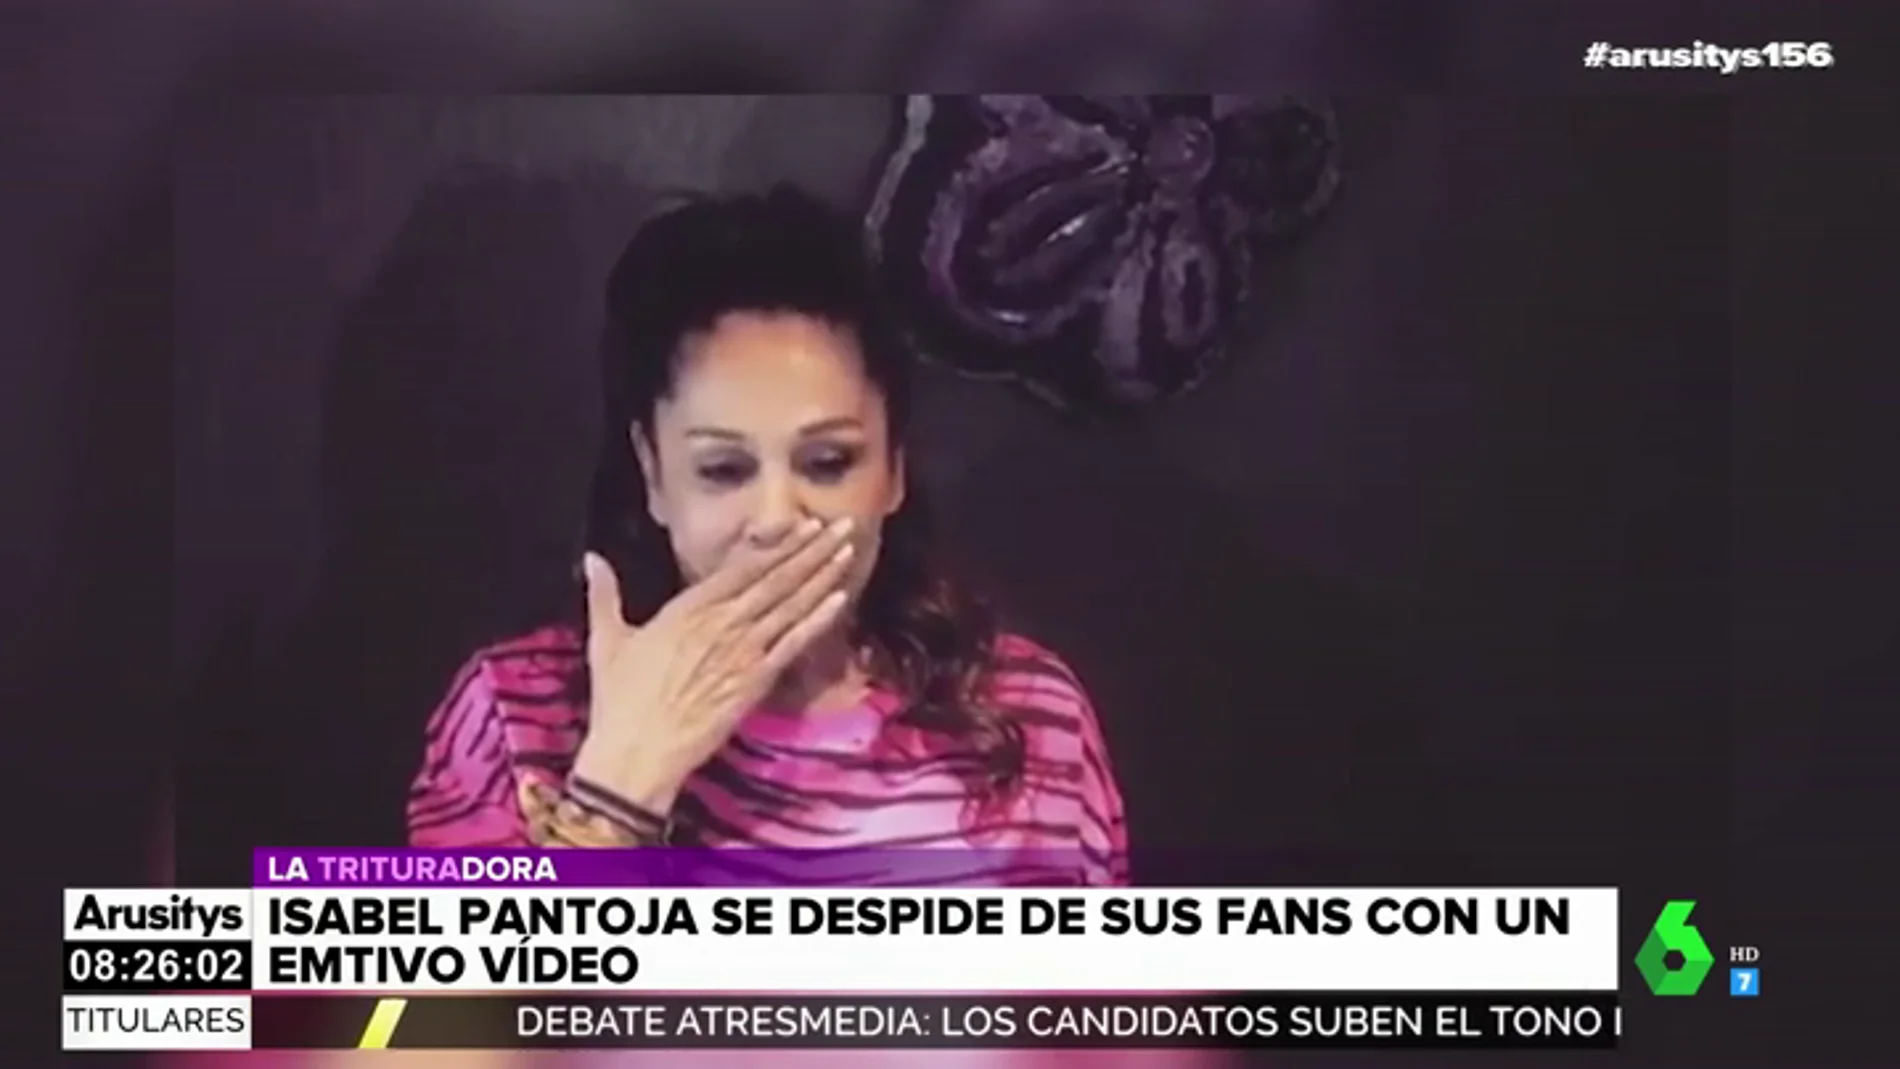 El emotivo vídeo de Isabel Pantoja con el que se despide de sus fans al borde del llanto